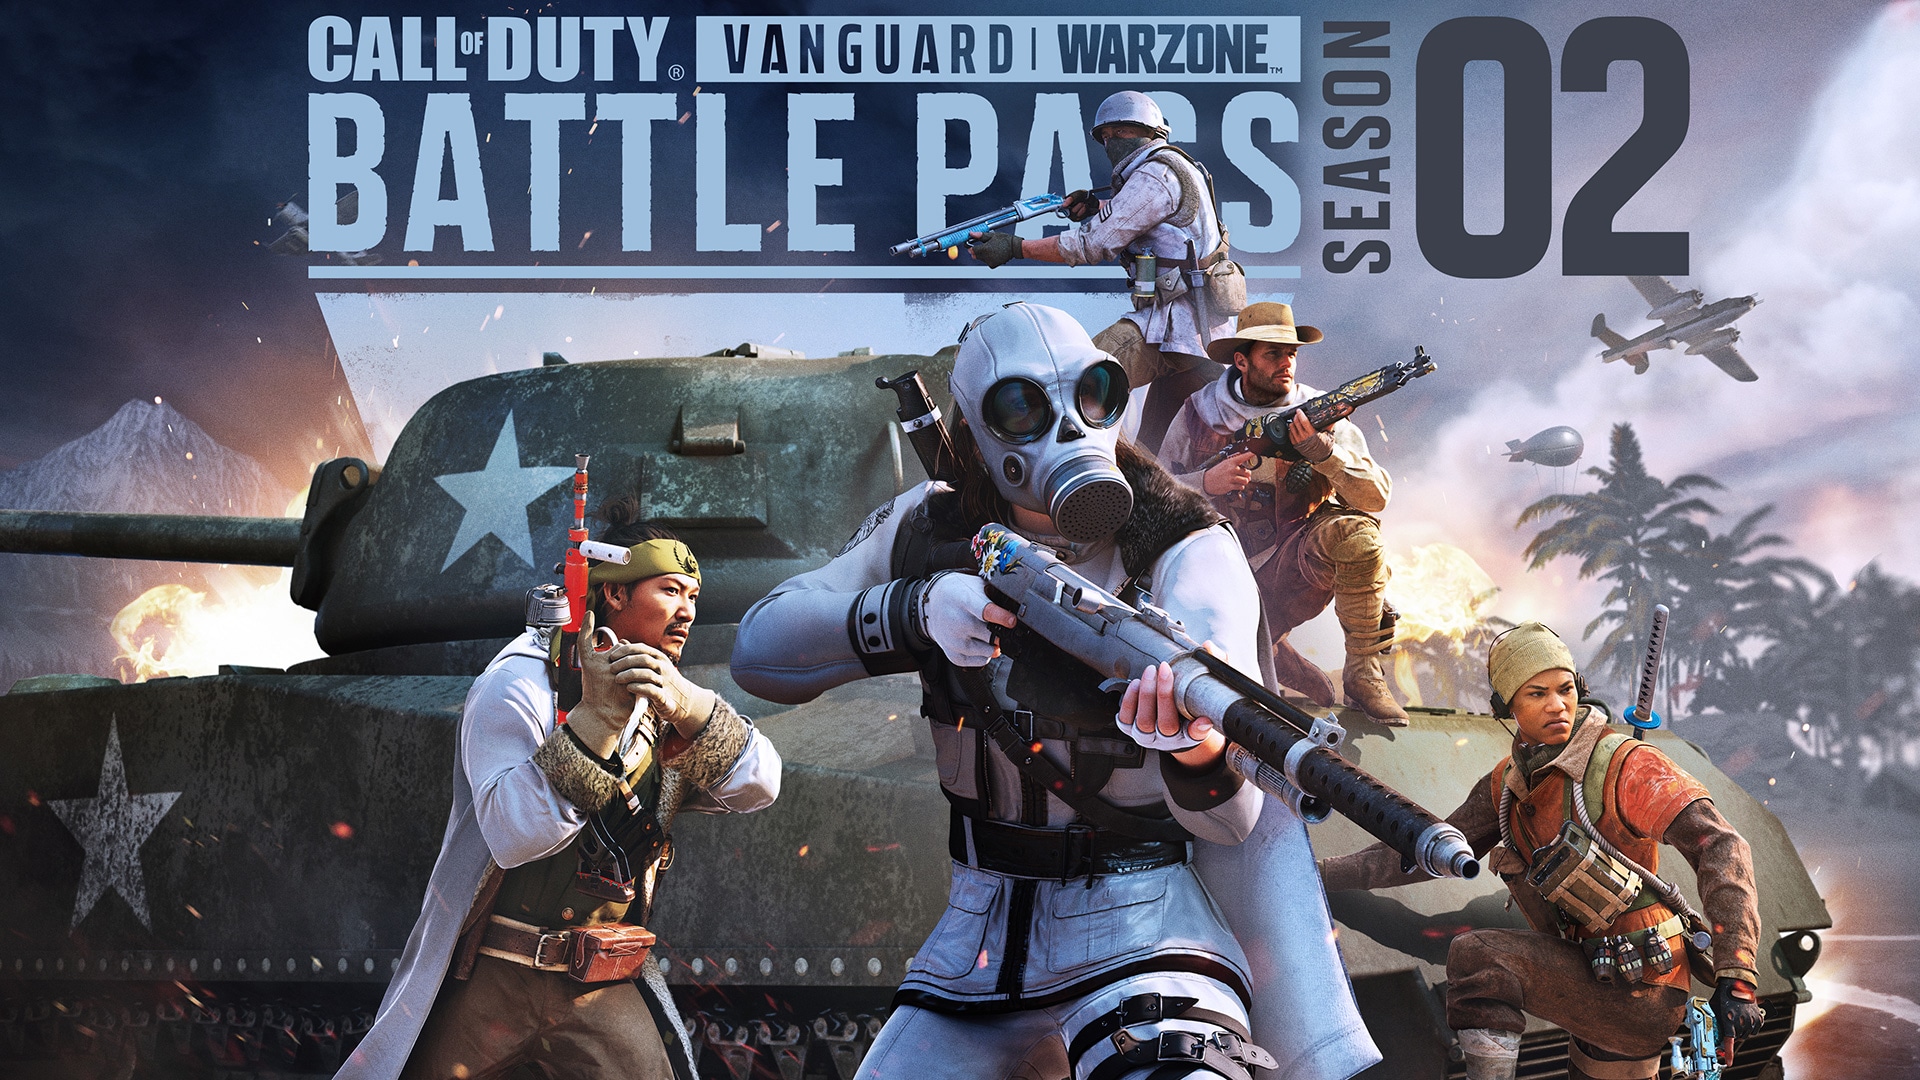 Reforzaos y reabasteceos con el Pase de batalla y los lotes de la Temporada 2 de Call of Duty®: Vanguard y Warzone™